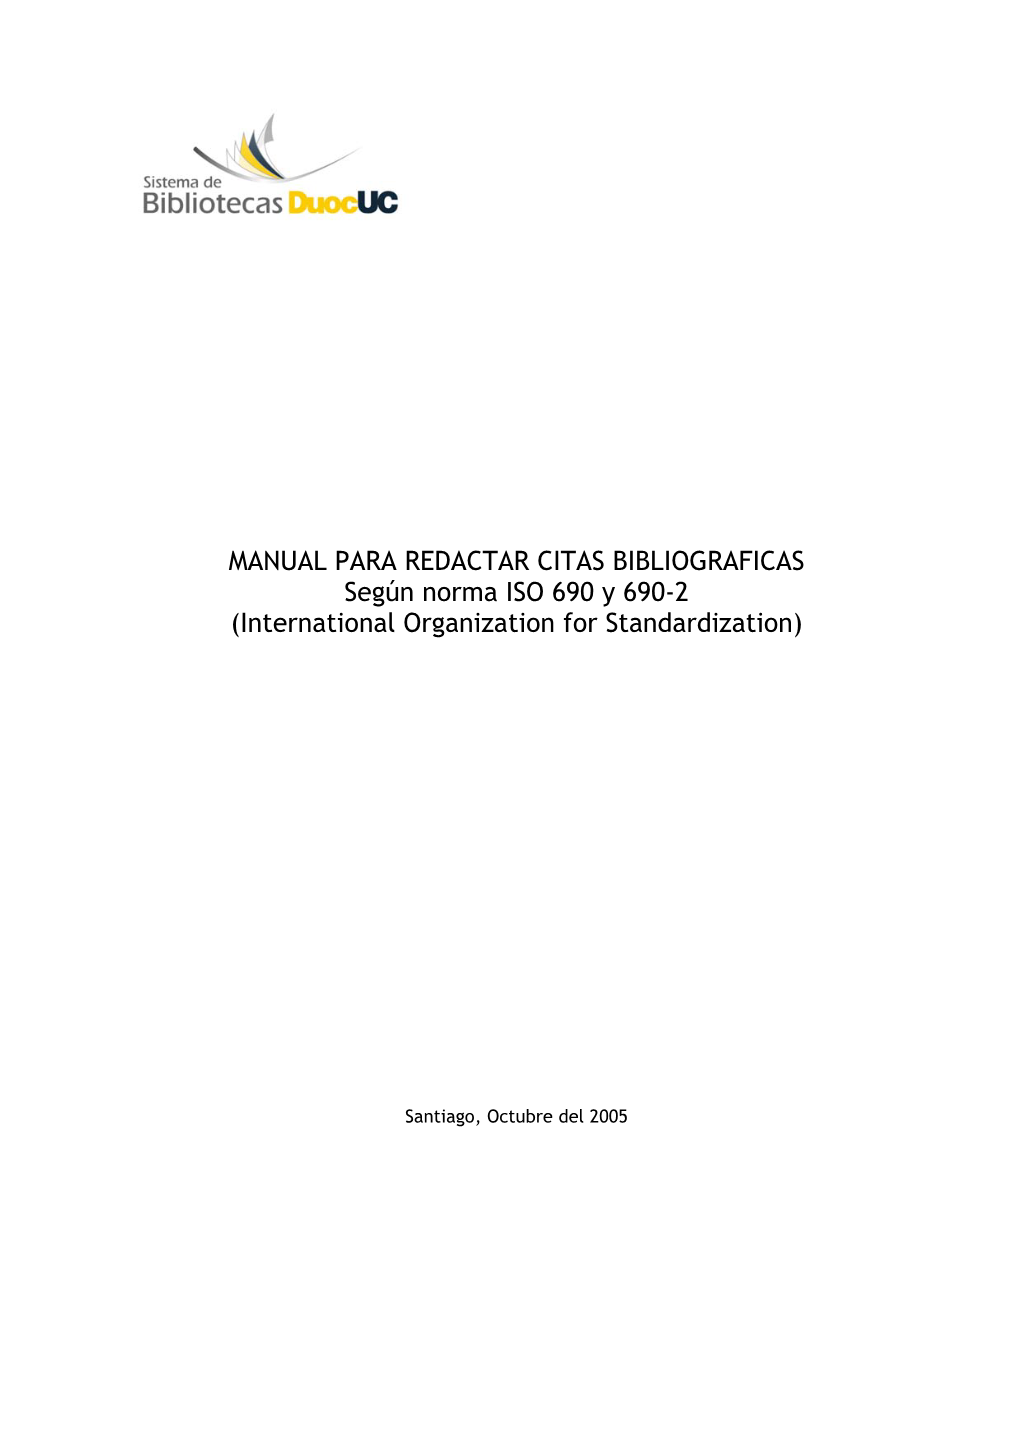 Redactar Citas Bibliograficas (Norma ISO 690 Y 690-2)